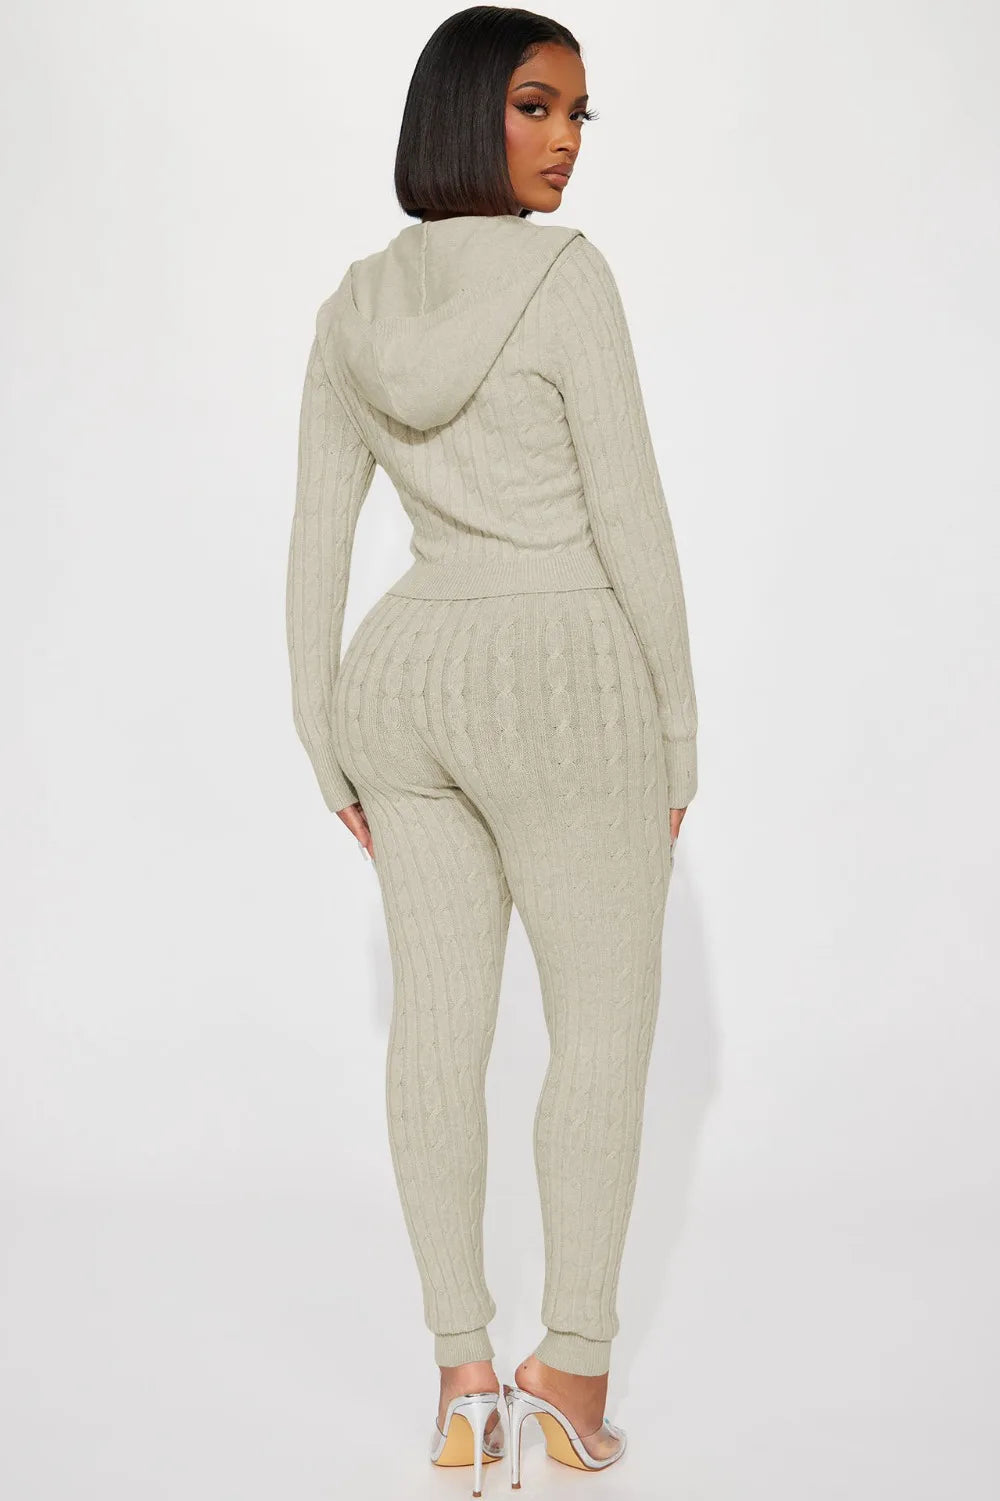 FZ Women's Solid Knitting Two Piece Skinny Pants Suit - FZwear